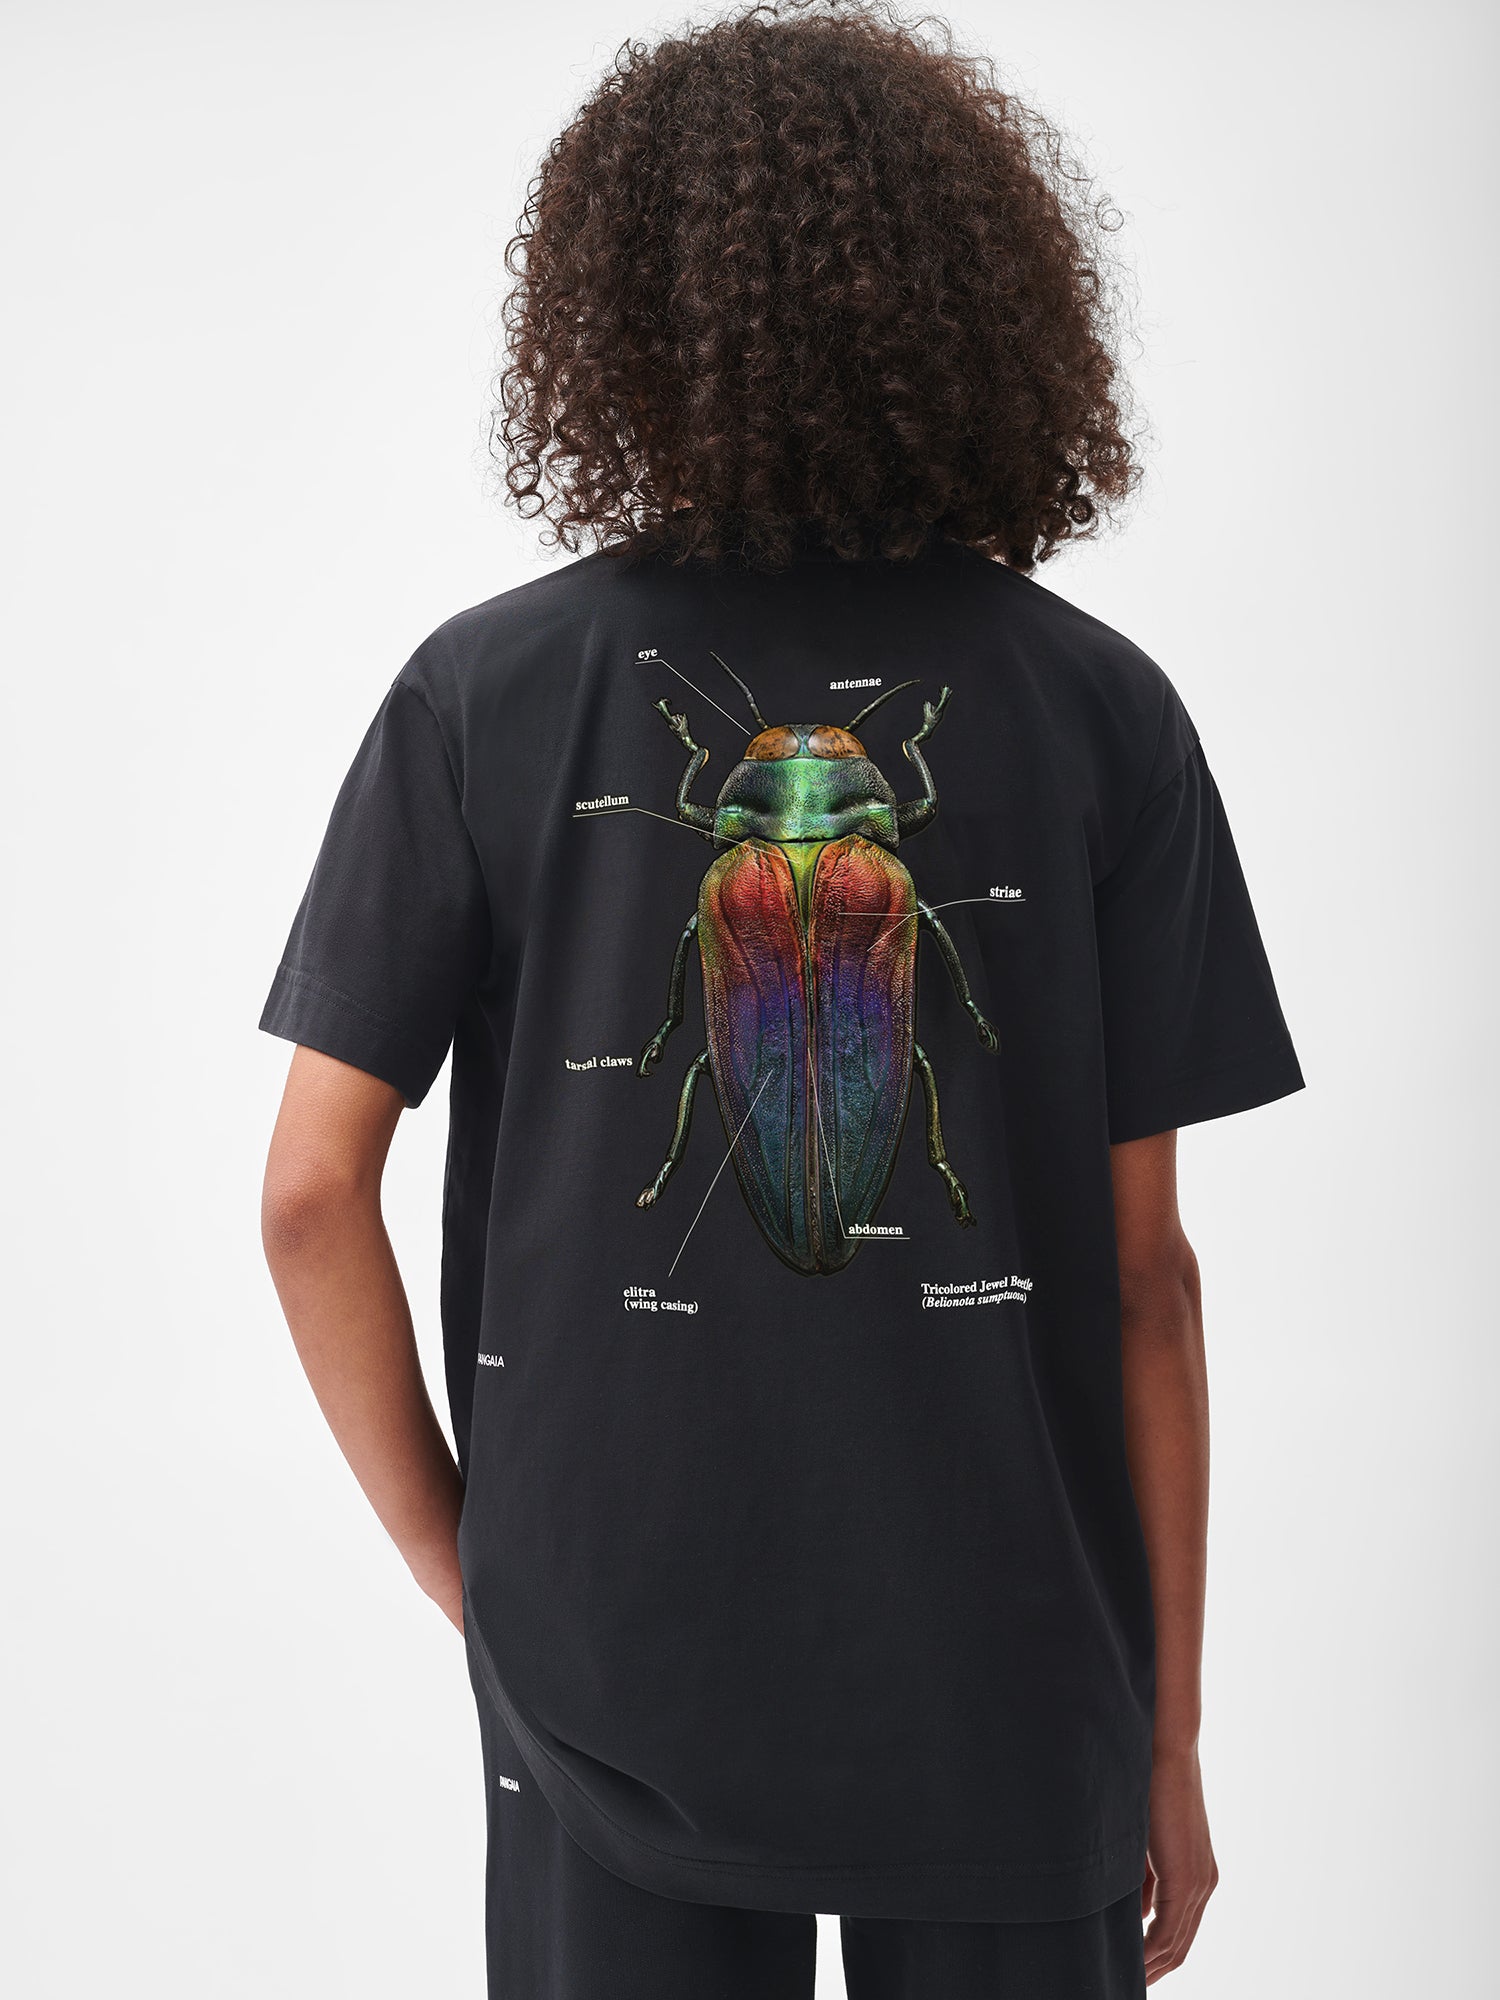 Levon-Biss-Splendid-Necked-Beetle-T-Shirt-Black-Model-Female-2